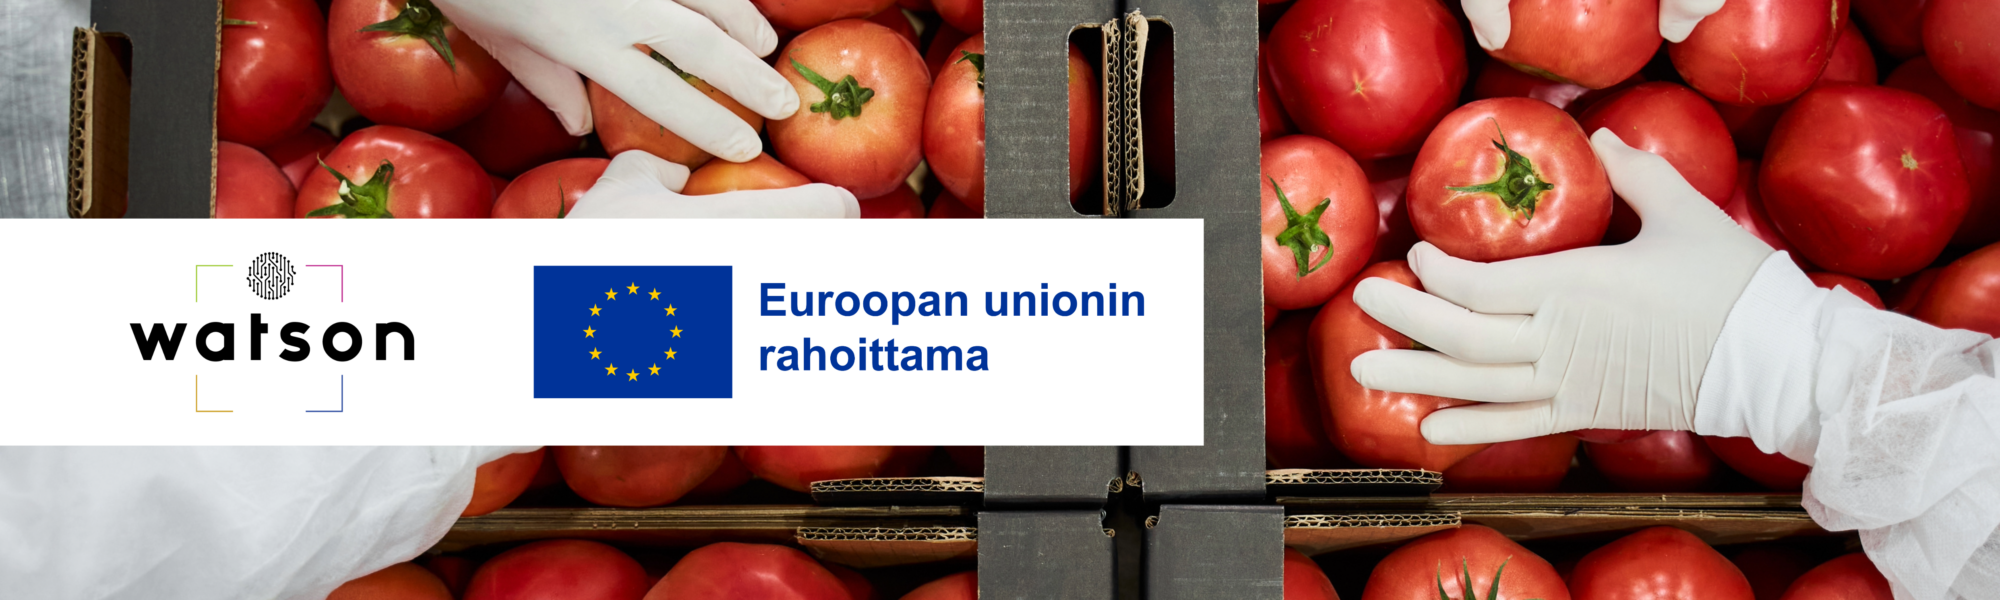 Watson-hankkeen logo. EU:n rahoituslogo. Kädet poimamassa tomaatteja laatikosta suojahanskat päällä.